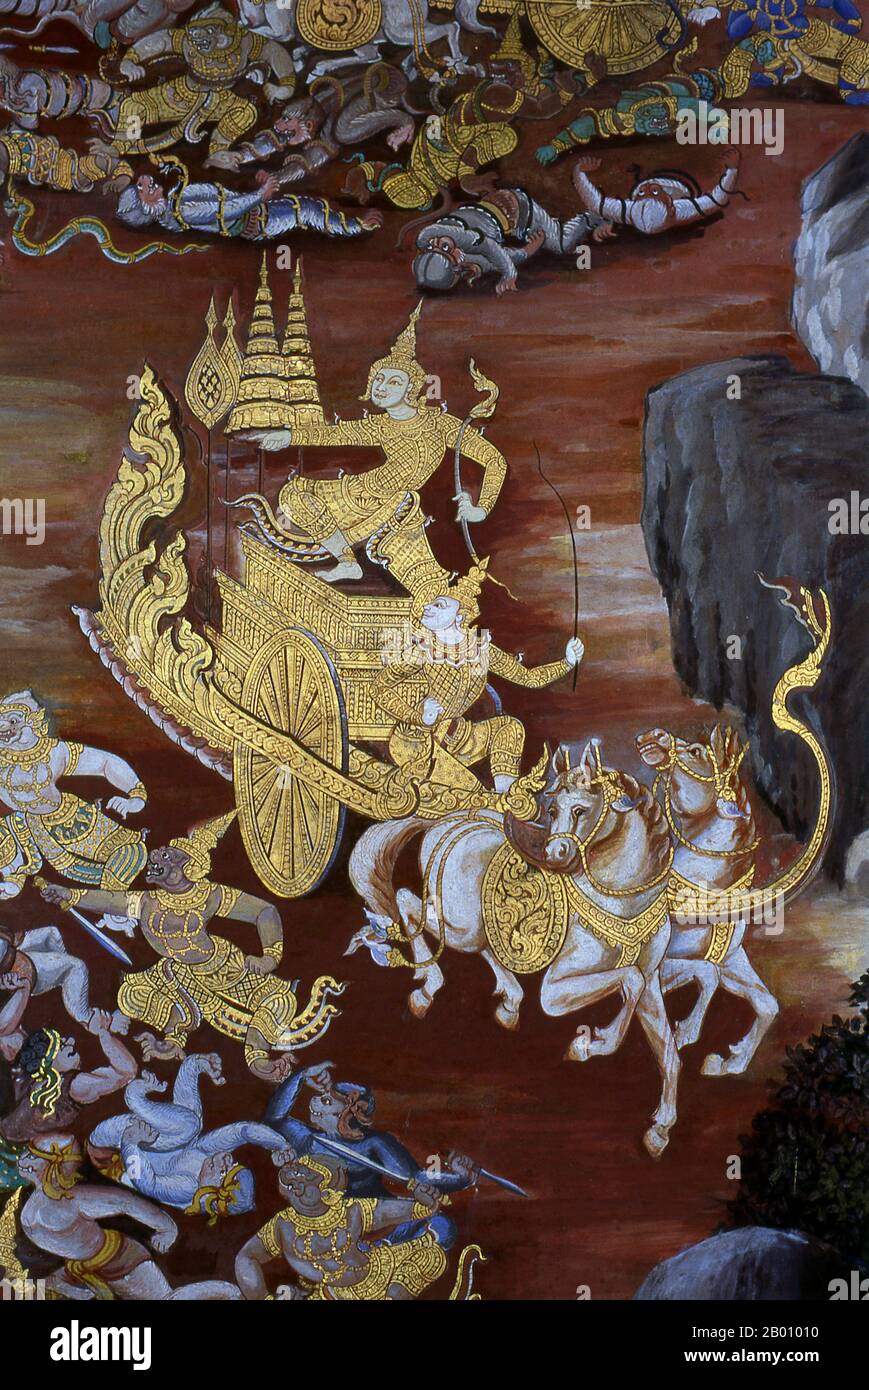 Thailandia: Il carro di Rama, i murales di Ramakien (Ramayana), Wat Phra Kaeo (Tempio del Buddha di Smeraldo), Bangkok. Il Ramayana è una storia antica come il tempo e - almeno nel subcontinente indiano e in gran parte del sud-est asiatico - di popolarità senza pari. Più di duemila trecento anni fa lo studioso-poeta Valmiki si sedette per scrivere il suo epico definitivo di amore e guerra. Il Ramakien è la versione tailandese di questo epico e ha un'influenza importante sulla letteratura, l'arte e il dramma thailandesi. È considerato l'epica nazionale della Thailandia. Foto Stock